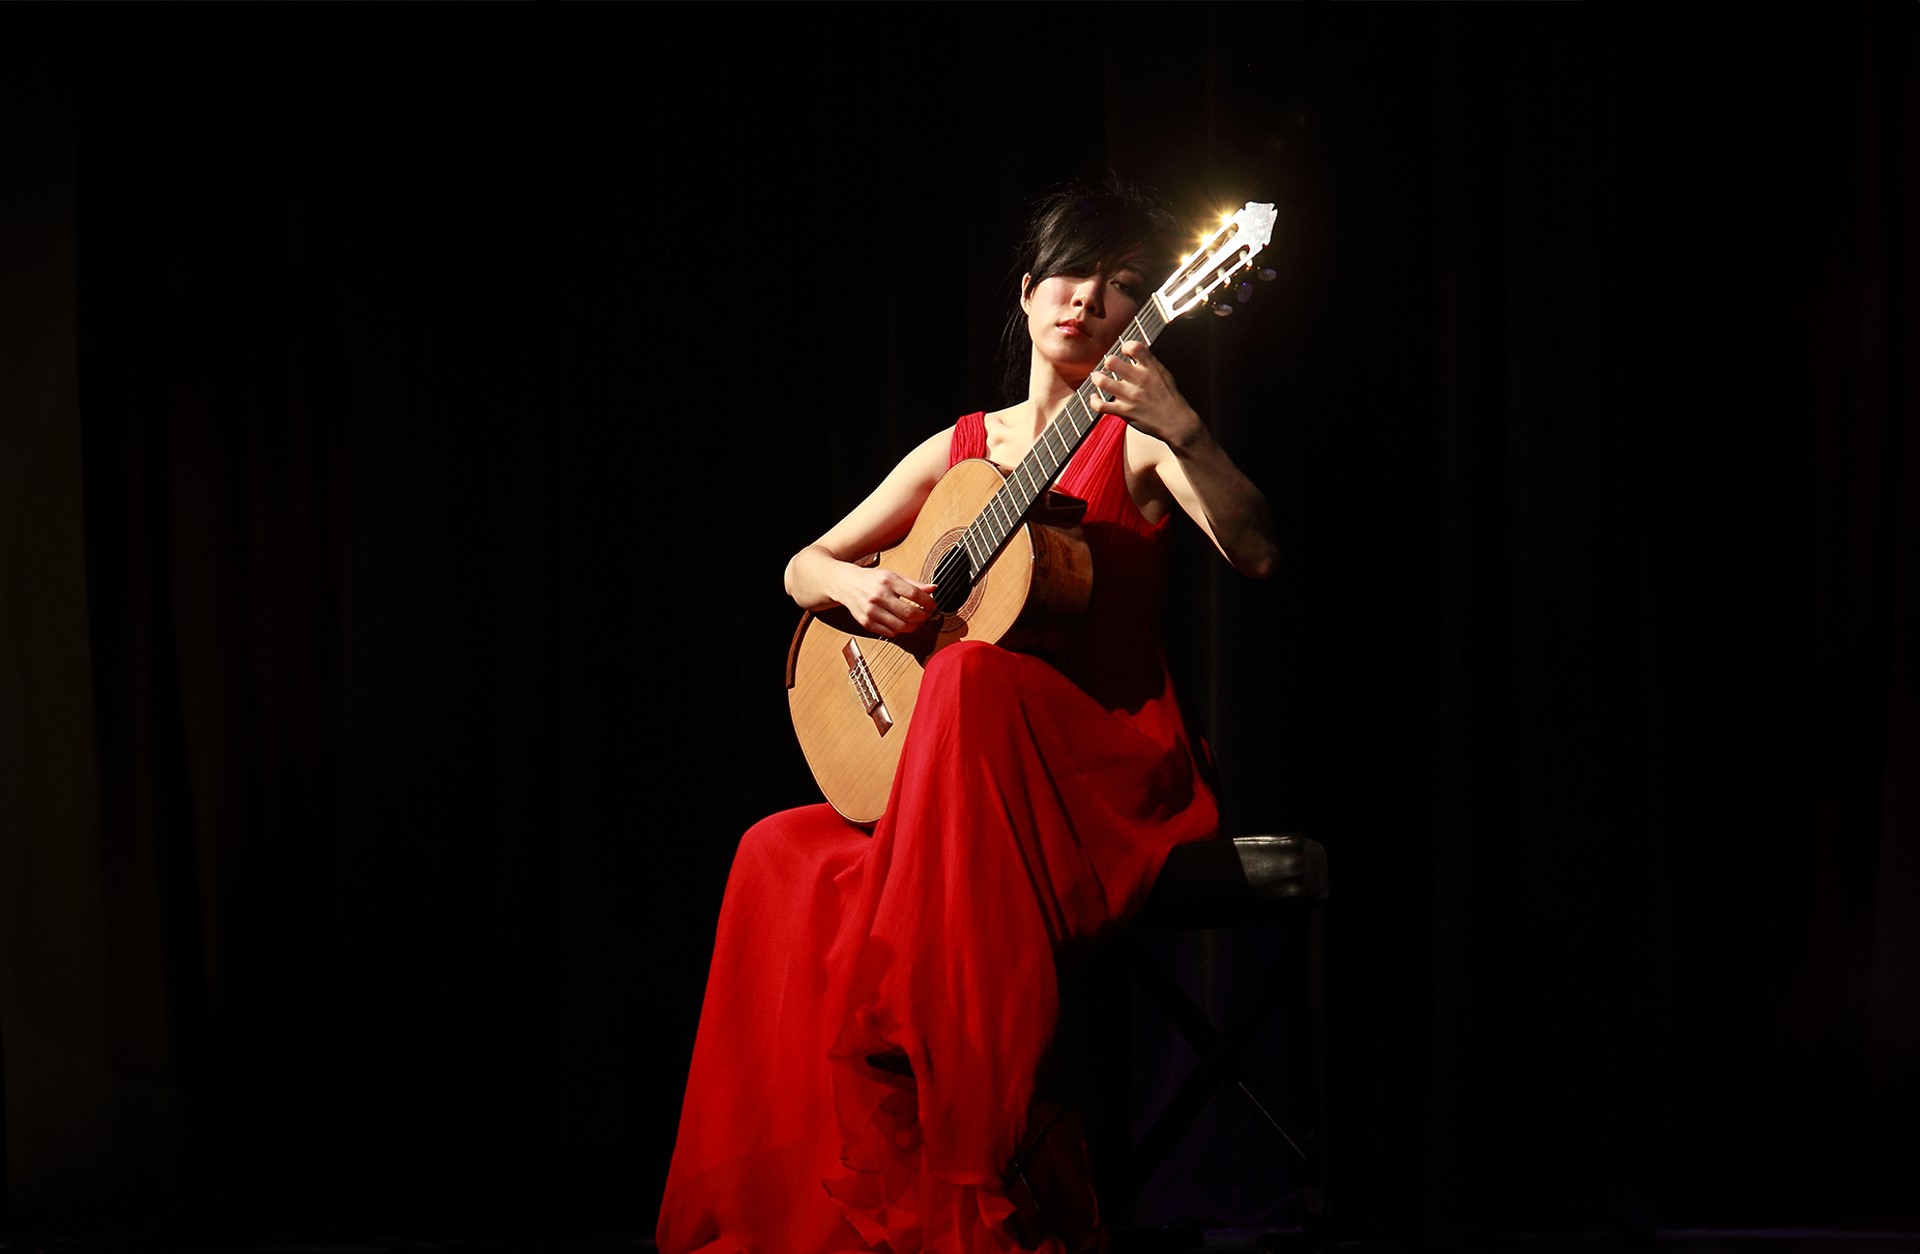 en kvinna från Kina sitter på en stol, hon har en röd klänning på sig och i handen har hon en gitarr.